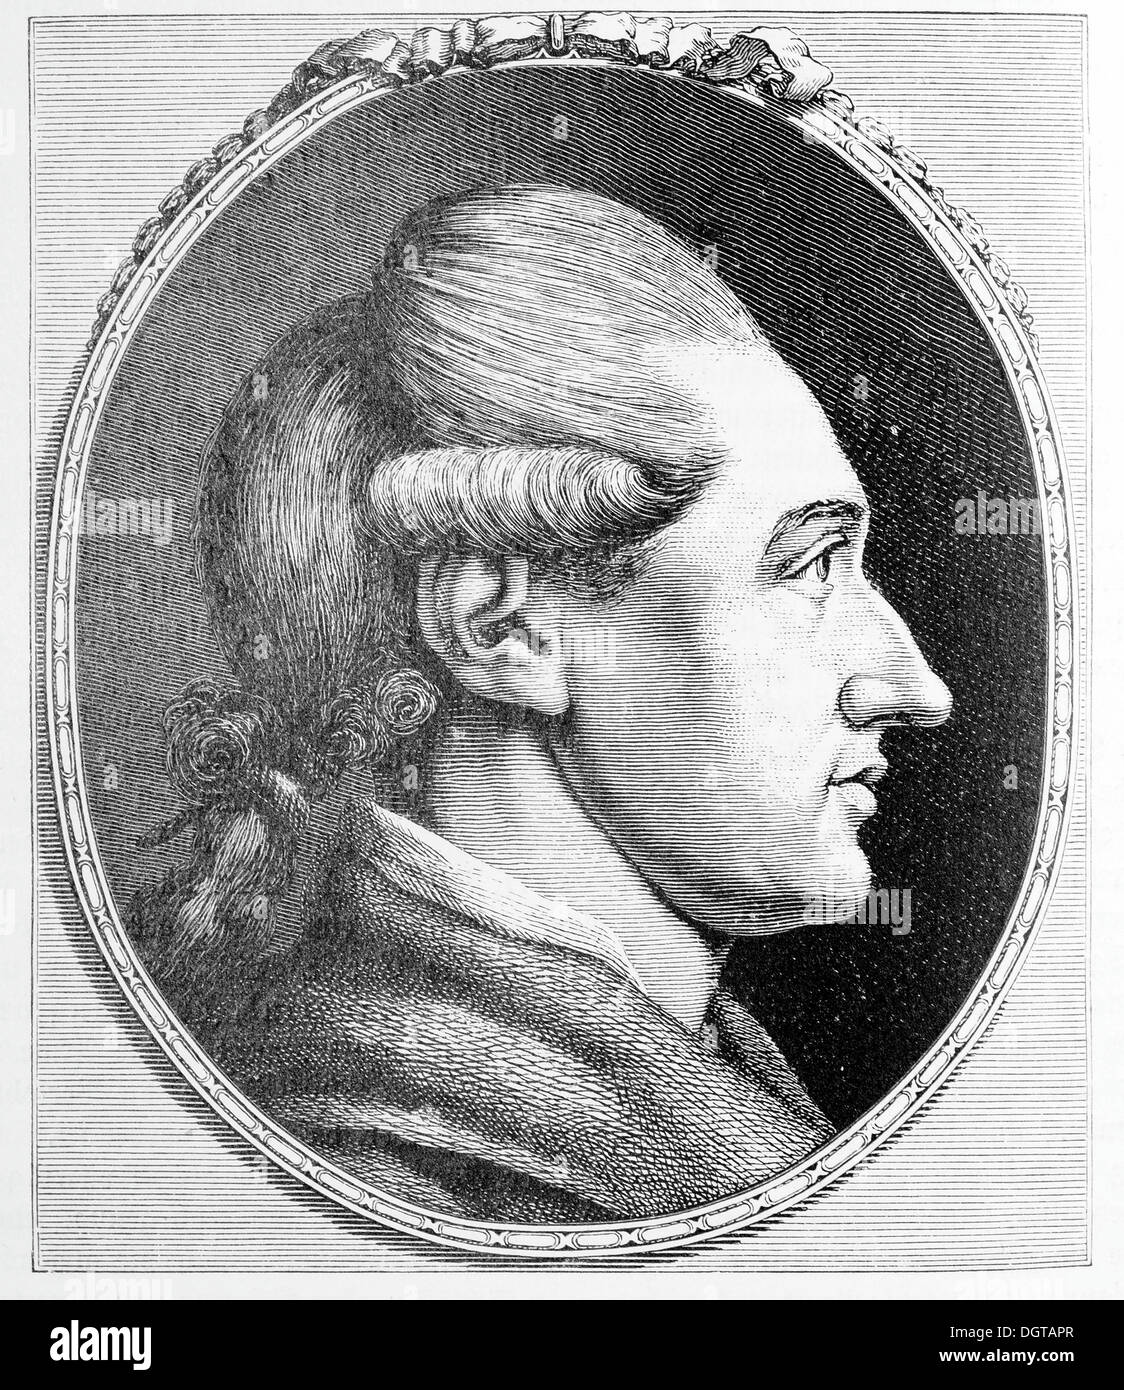 Goethe, à l'âge de 28 ans, à partir de l'illustration historique Deutsche Literaturgeschichte, une histoire de la littérature allemande de 1885 Banque D'Images